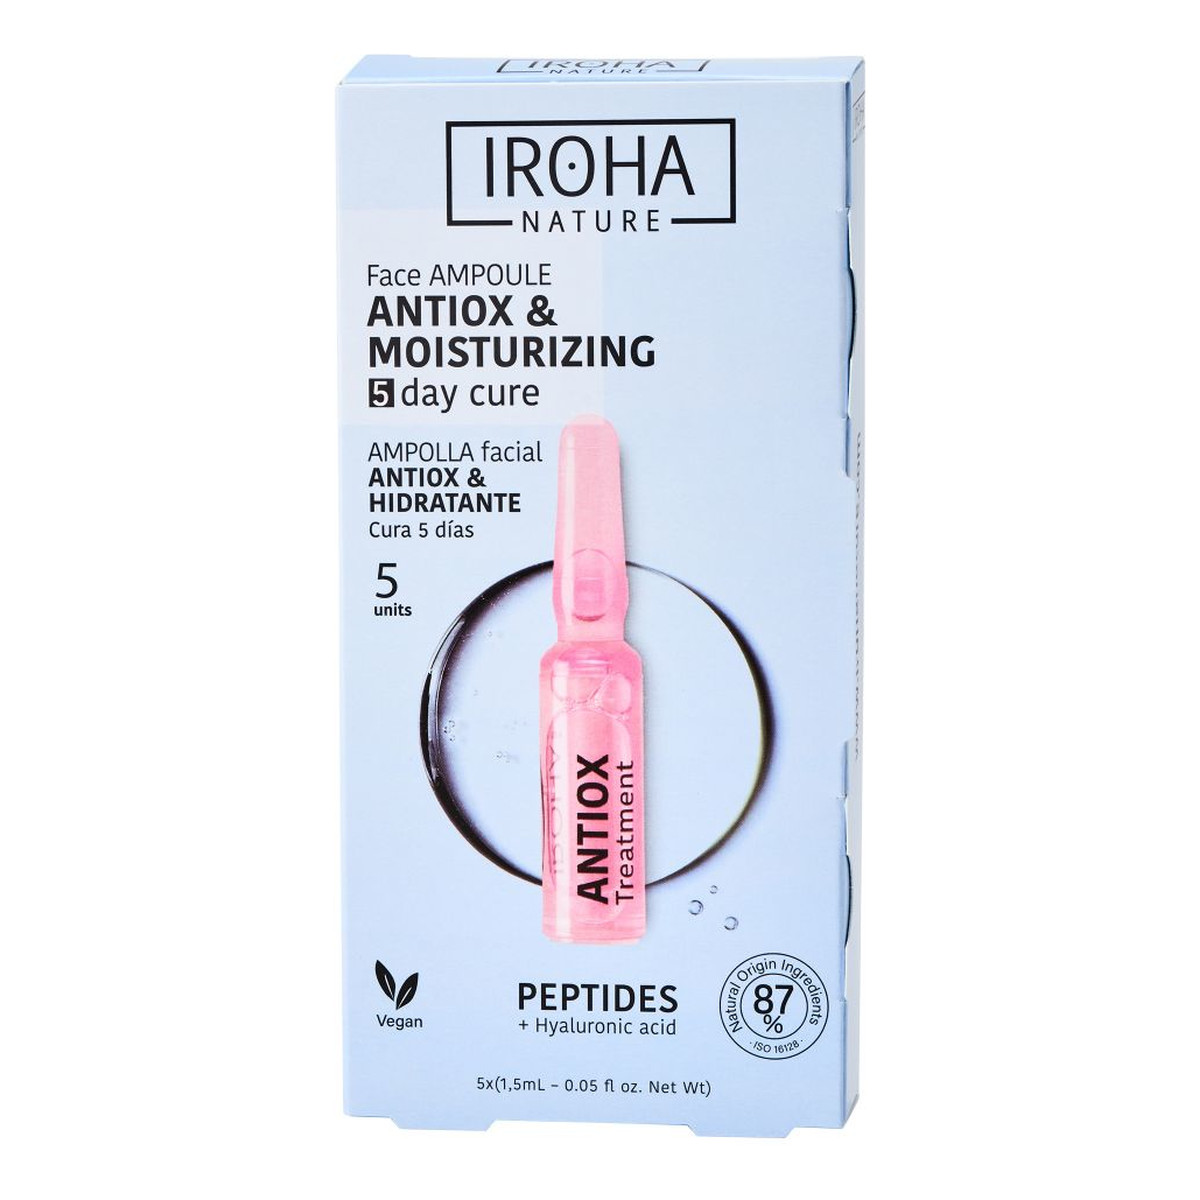 Iroha Nature Peptides Antiox Face Ampoule antyoksydacyjno-nawilżające ampułki do twarzy z peptydami 5x1.5ml 7.5